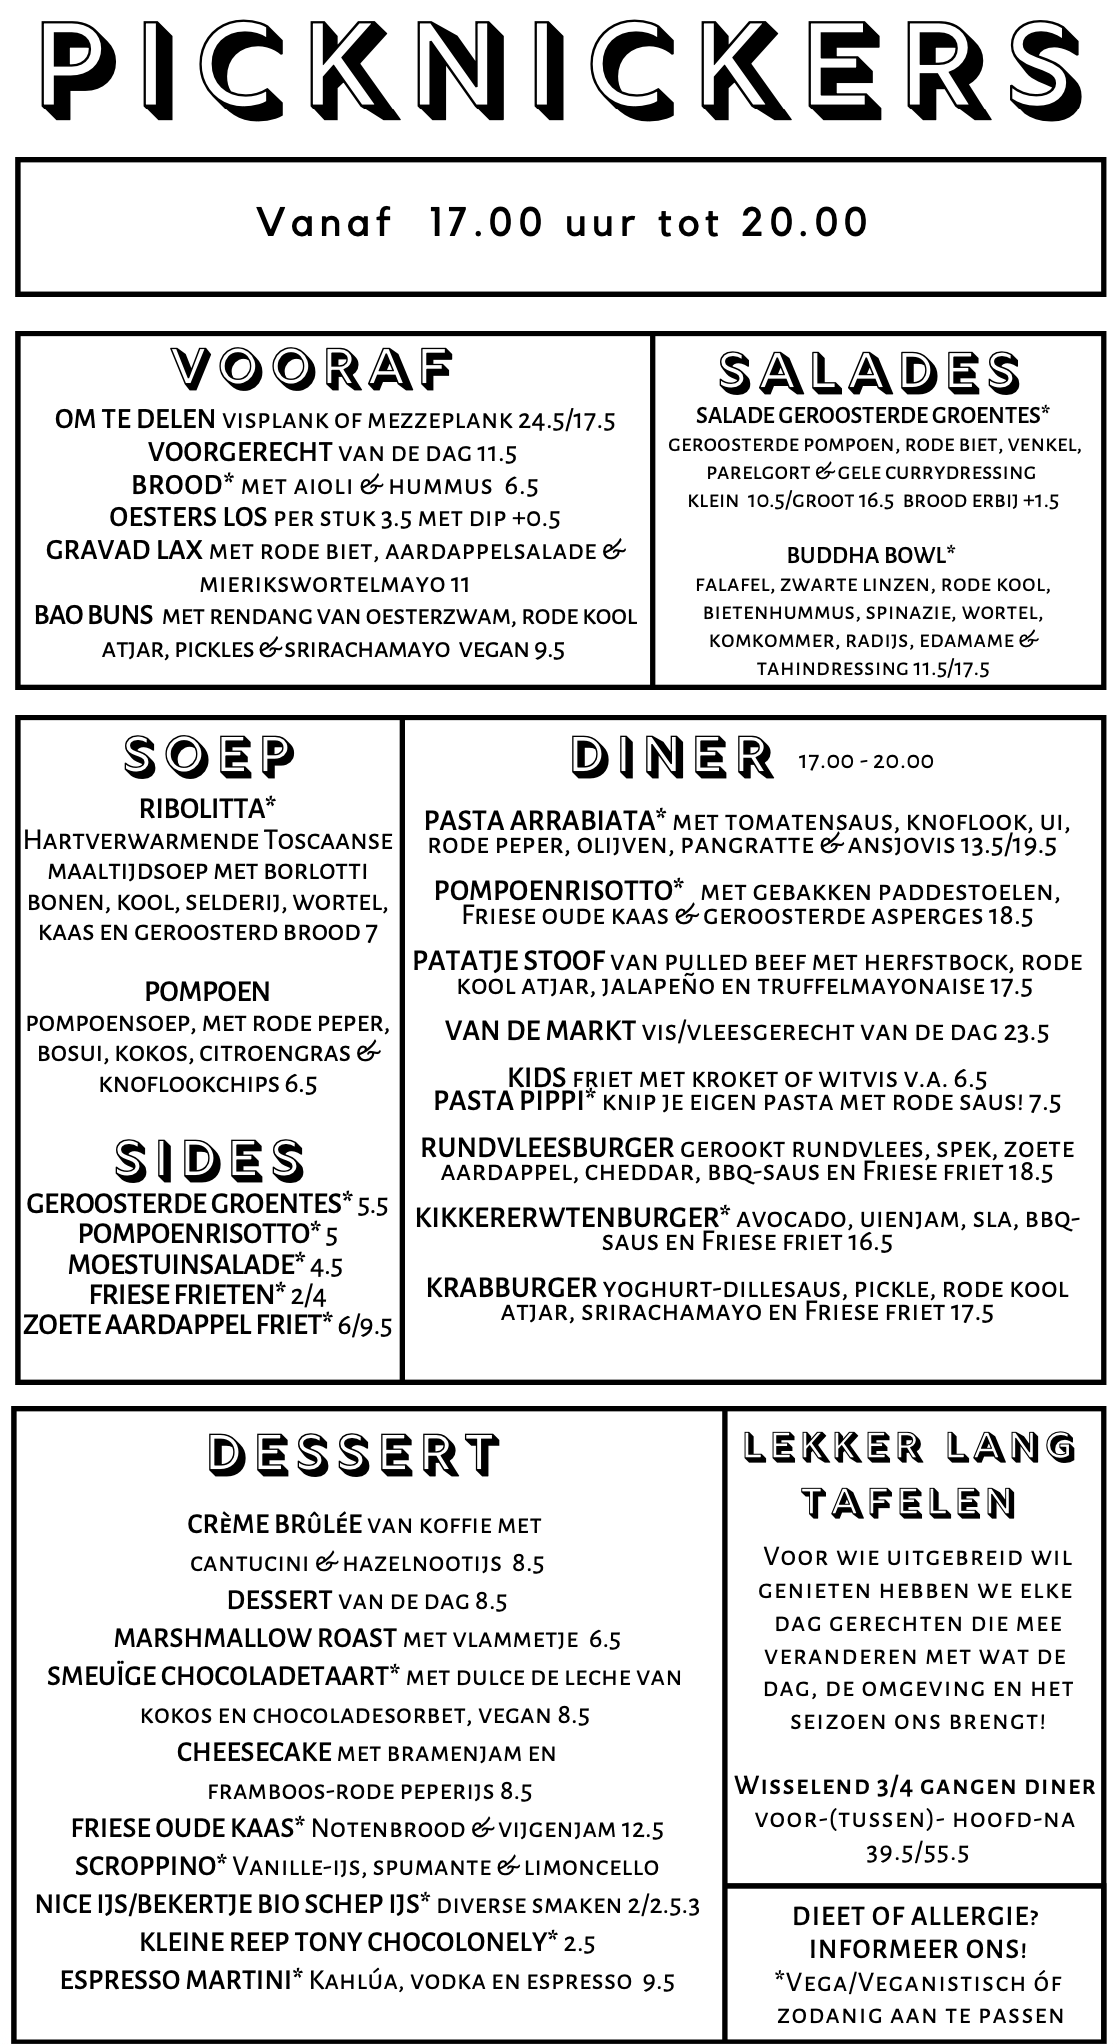 Restaurant Terherne menukaart diner - Picknickers